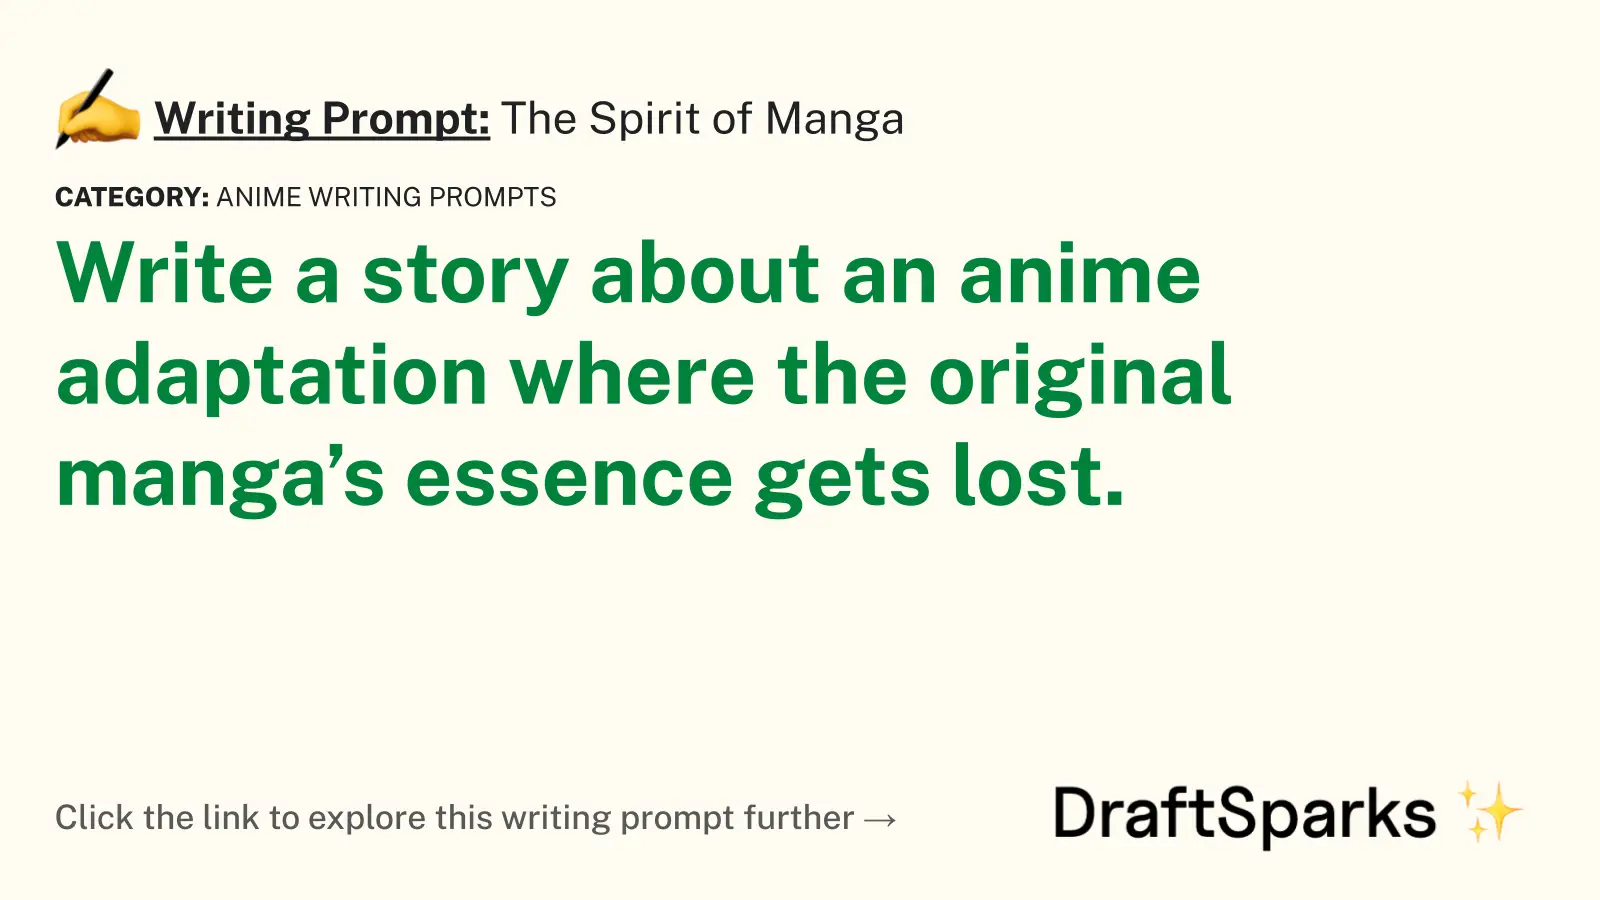 The Spirit of Manga